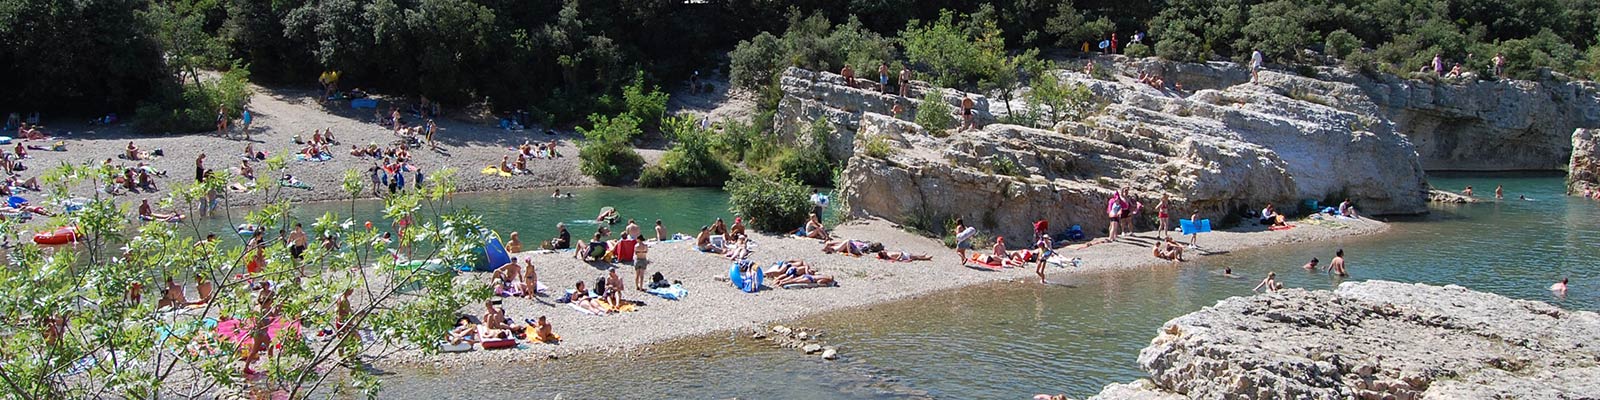 Camping aan de rivier Gard